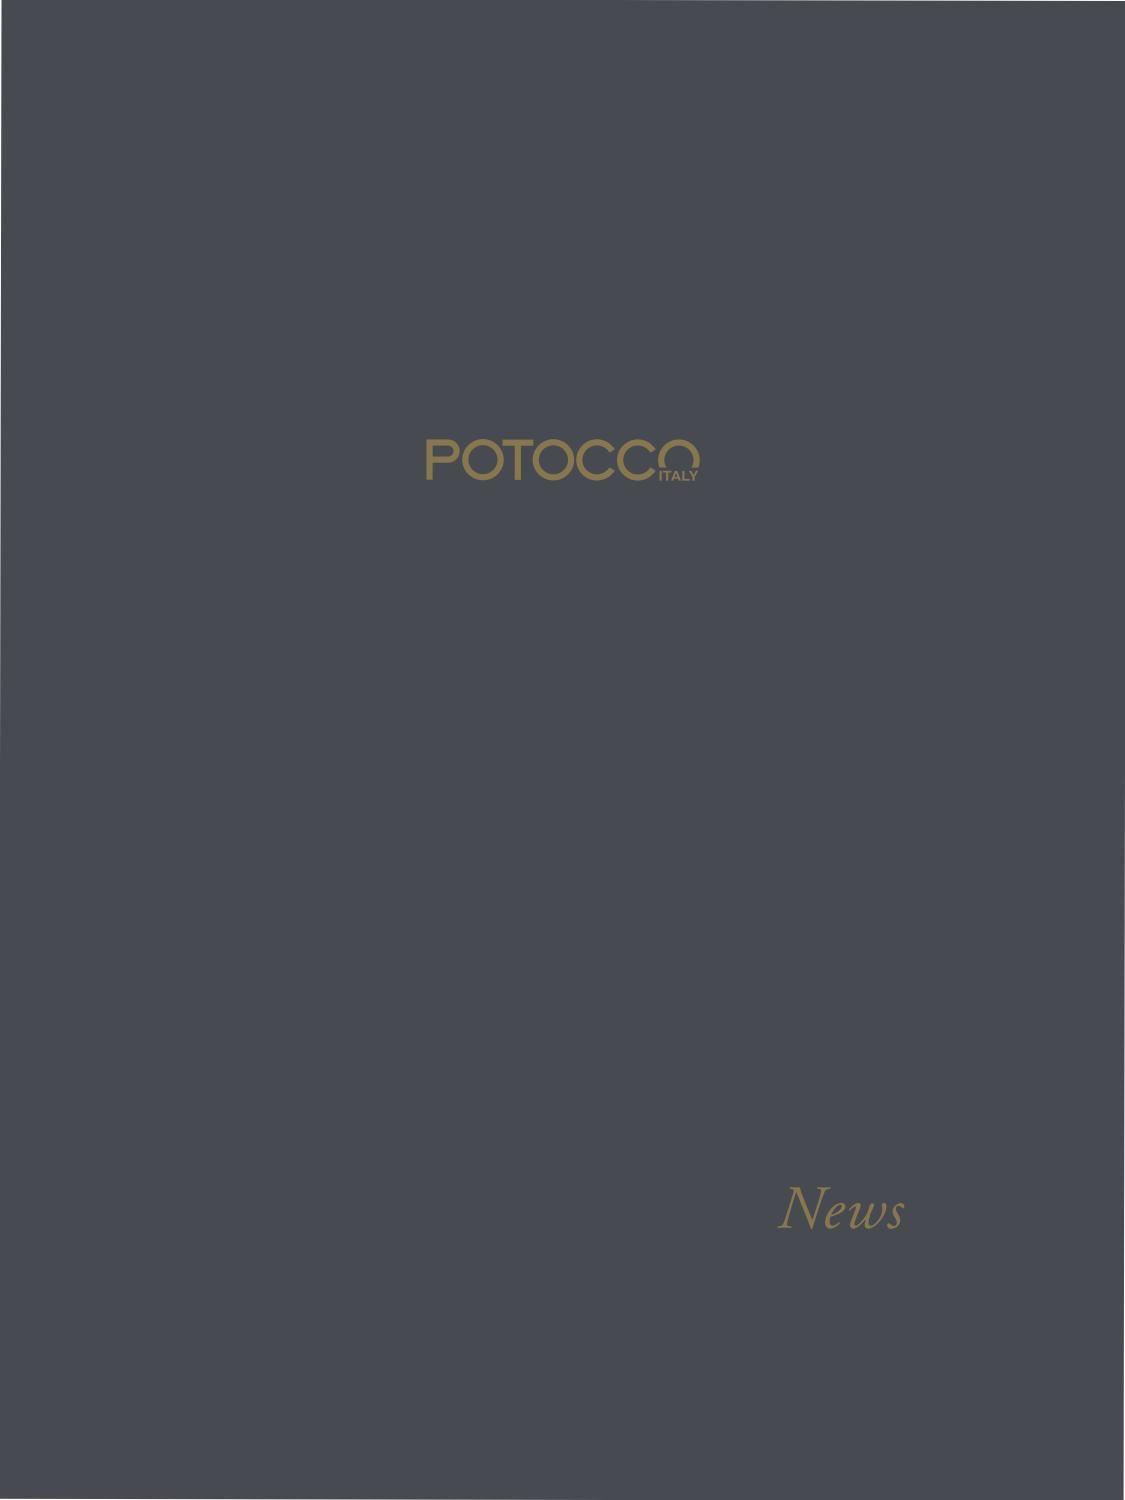 Potocco Logo - Potocco Catalogue NEWS 2017 by Potocco Italy - issuu